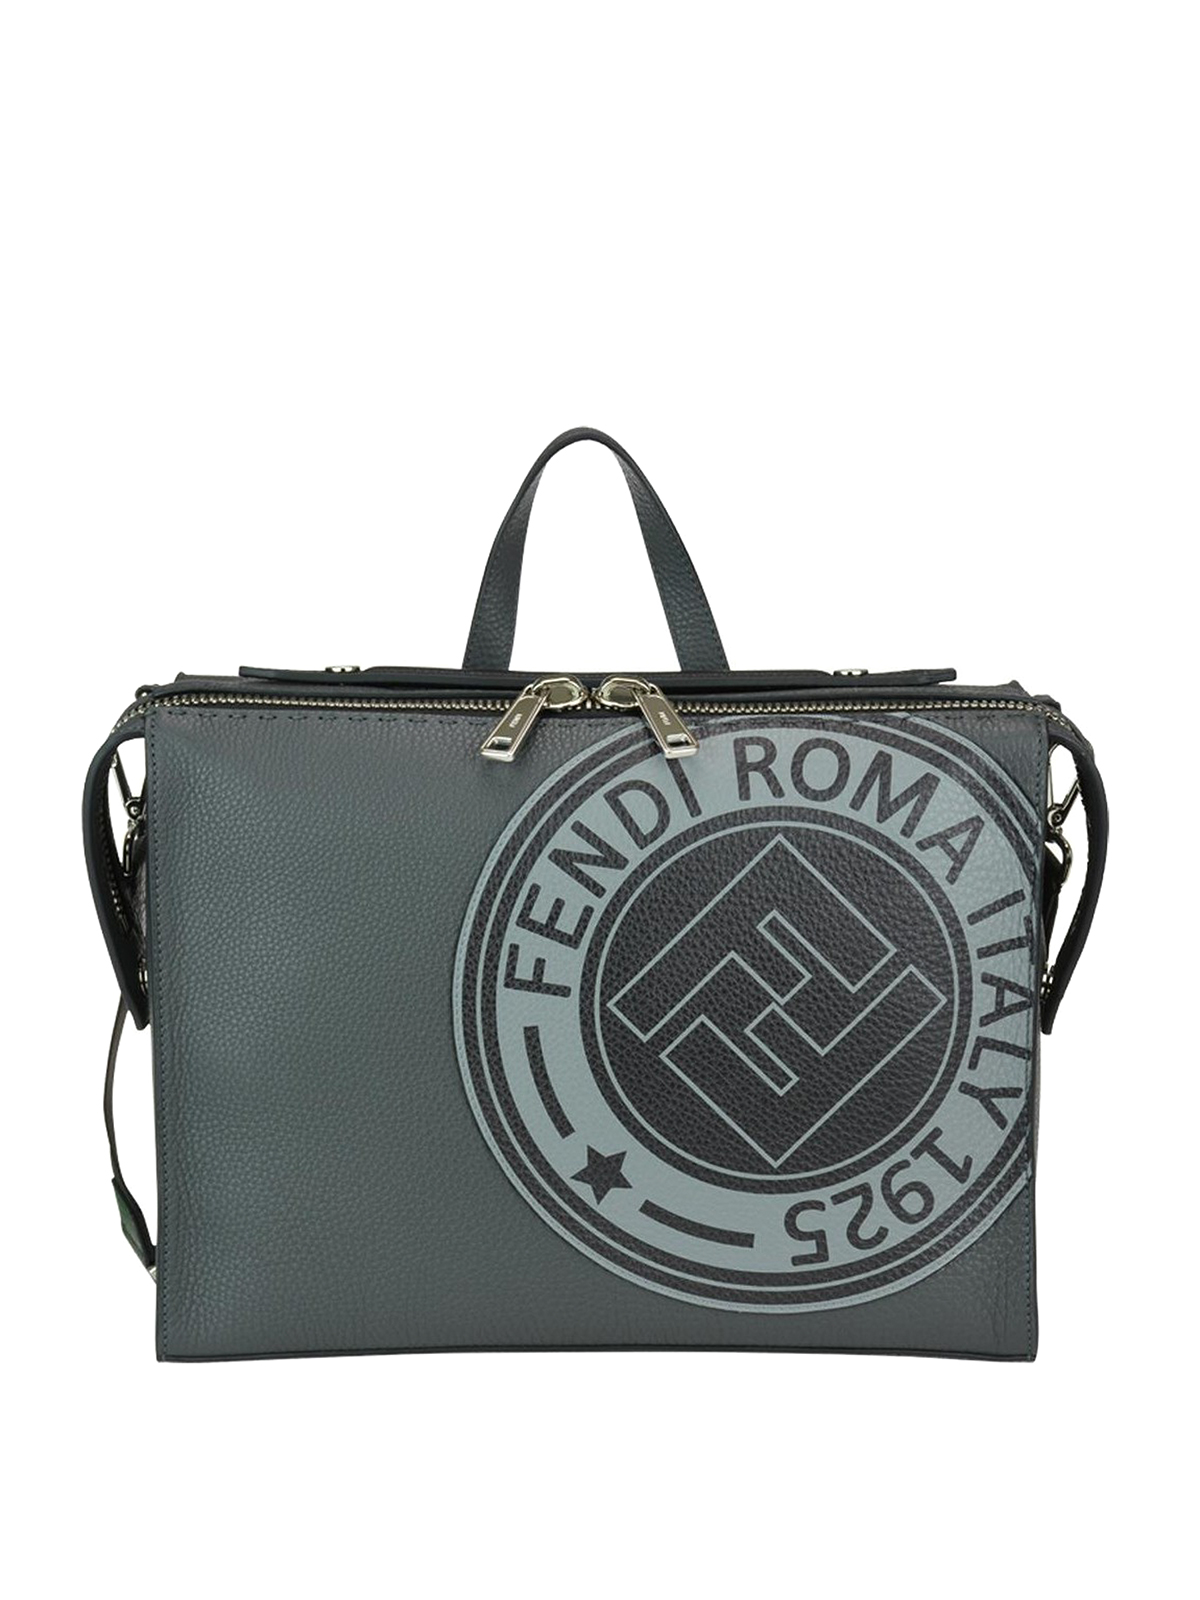 Fendi Black Fabric and Leather Mini Lui Bag Fendi